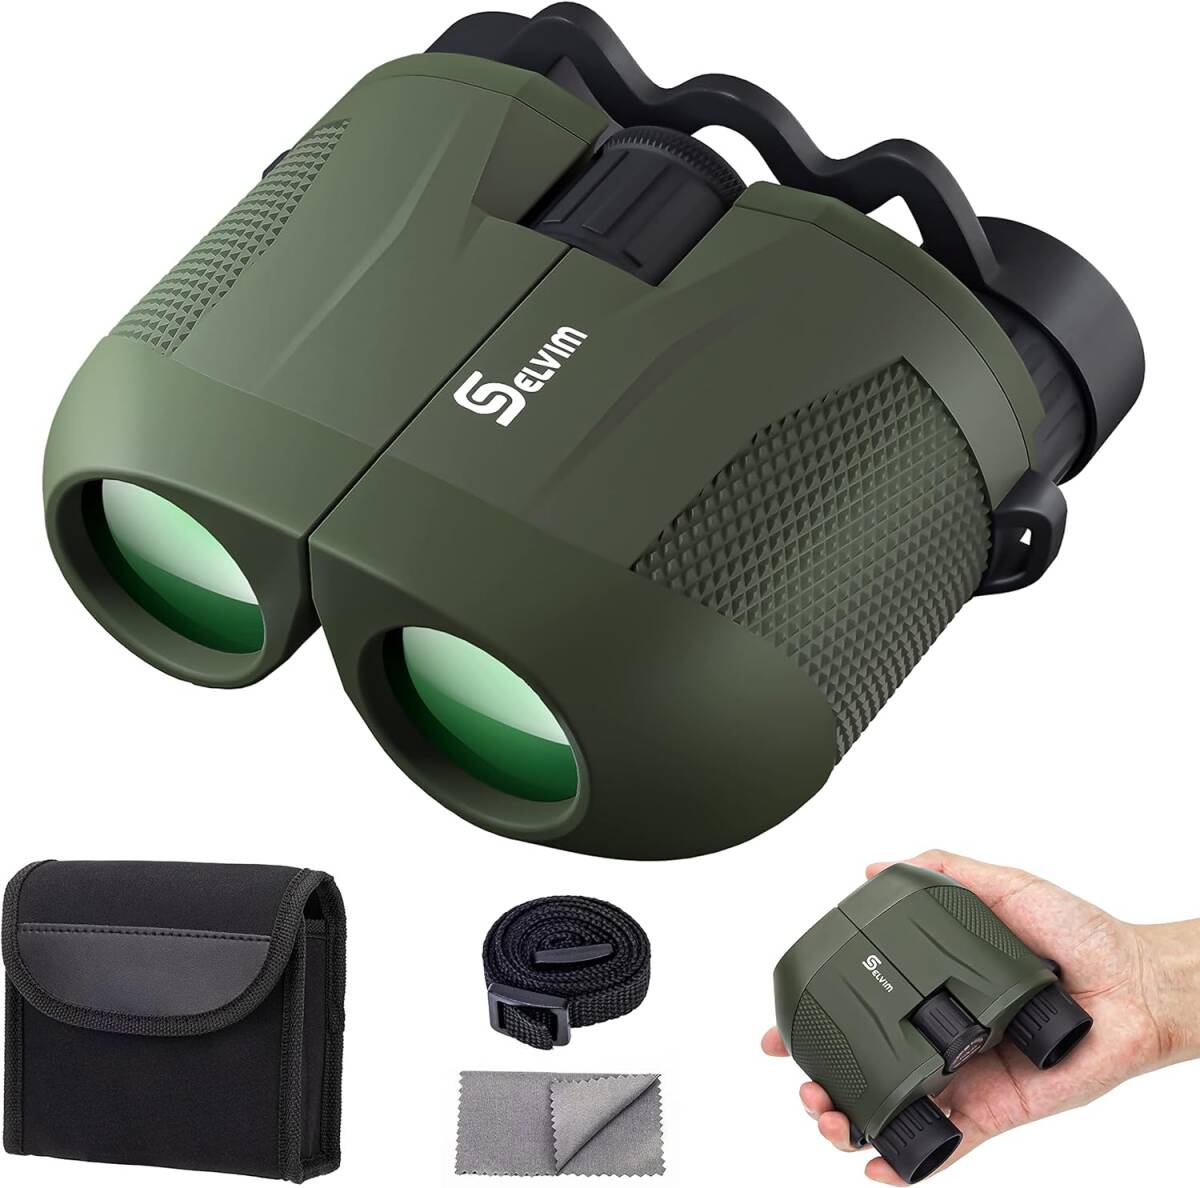  compact binoculars height magnification 10x25 concert opera glasses blur not light weight 